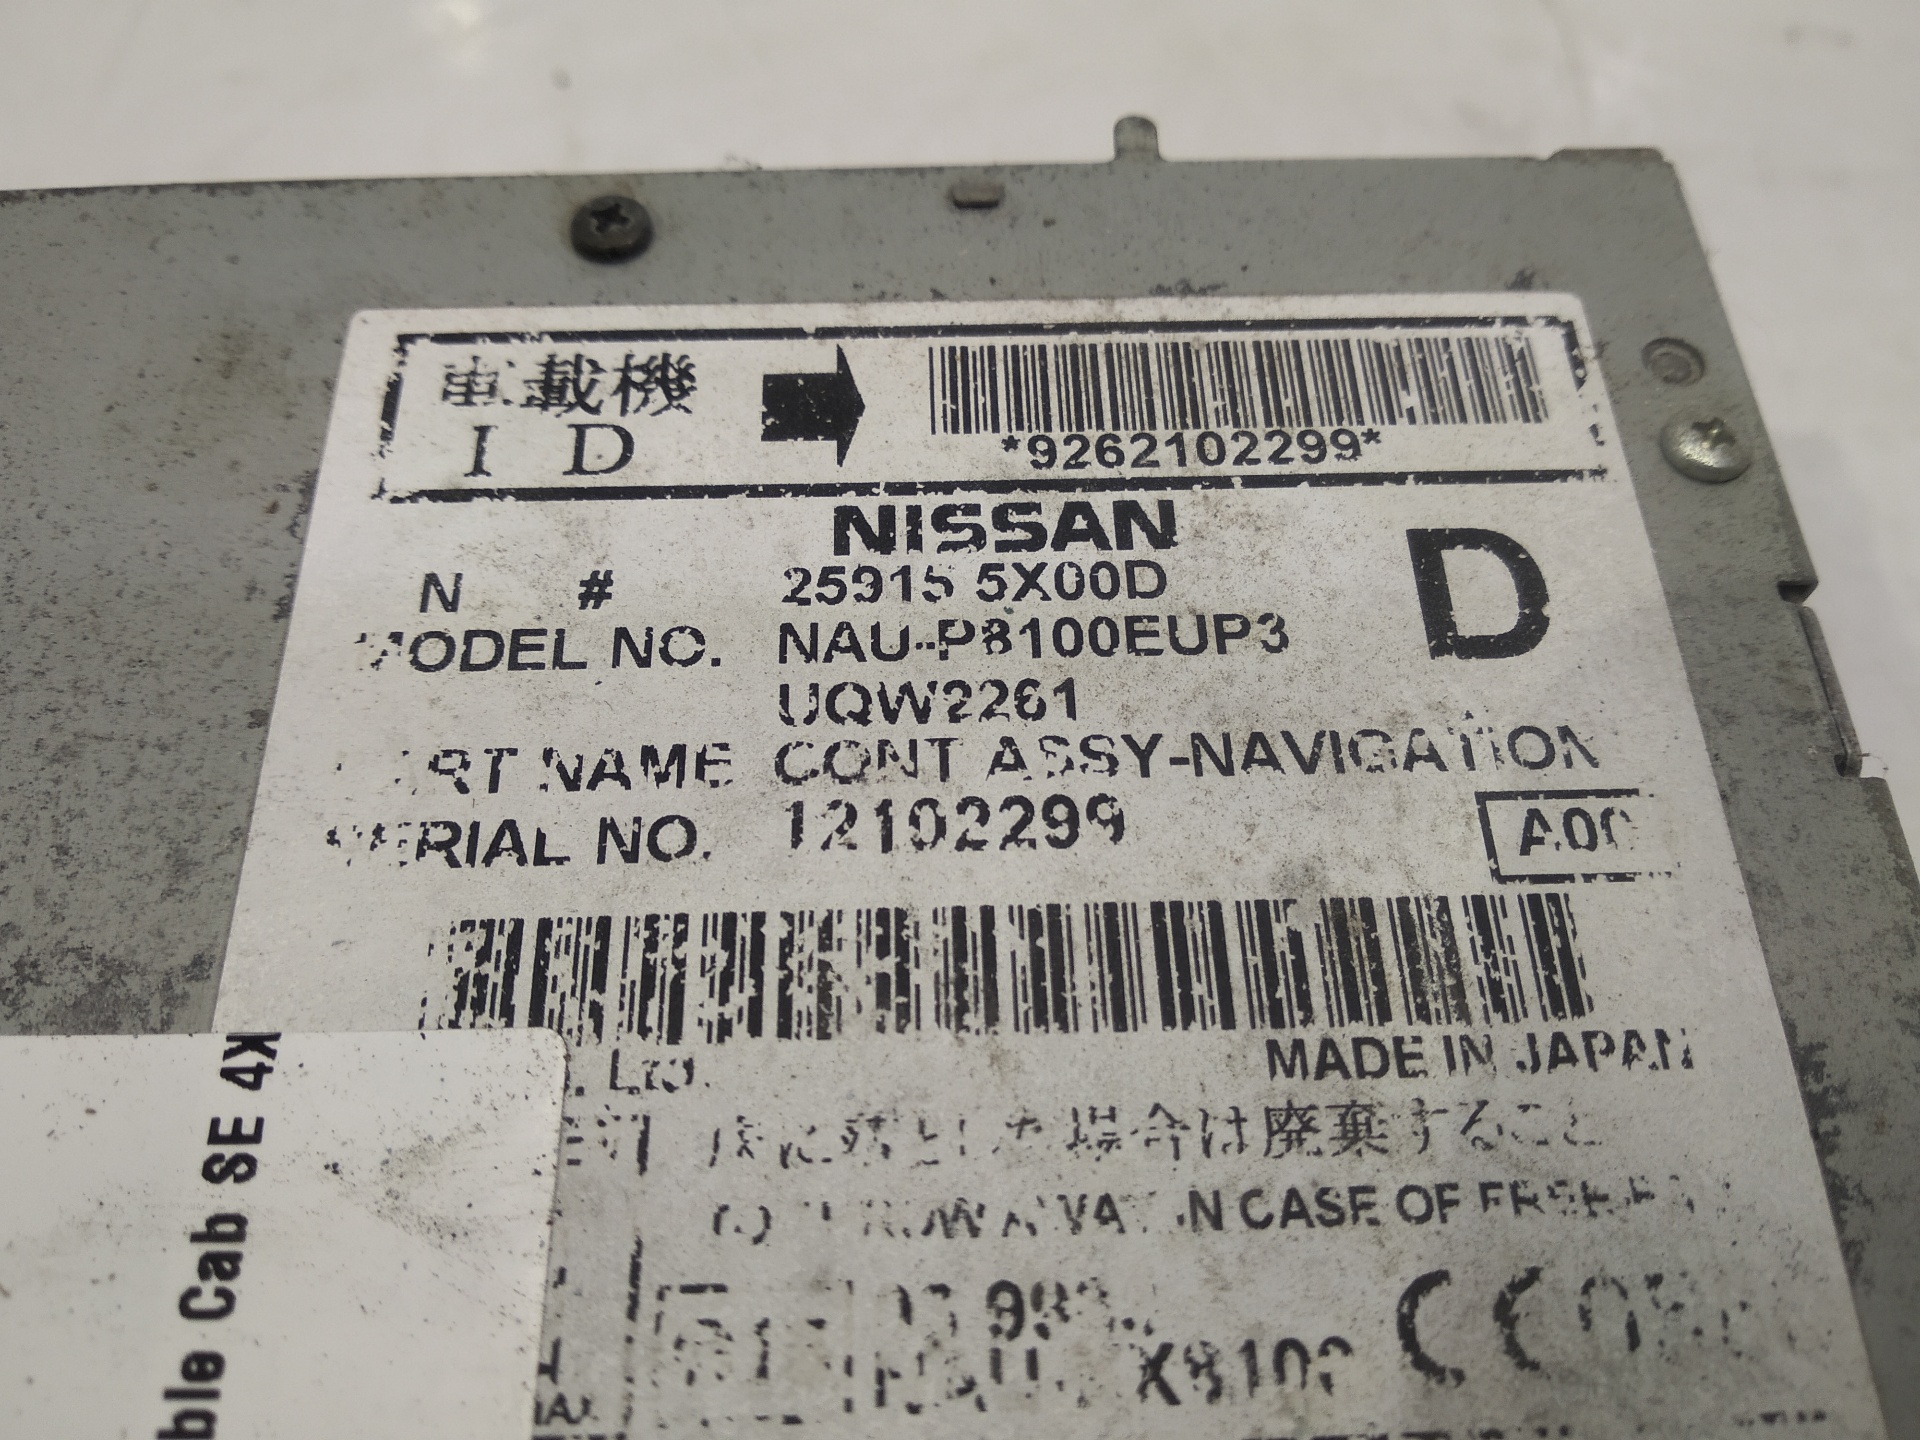 NISSAN NP300 1 generation (2008-2015) Автомагнитола с навигацией 259155X00D 25300786